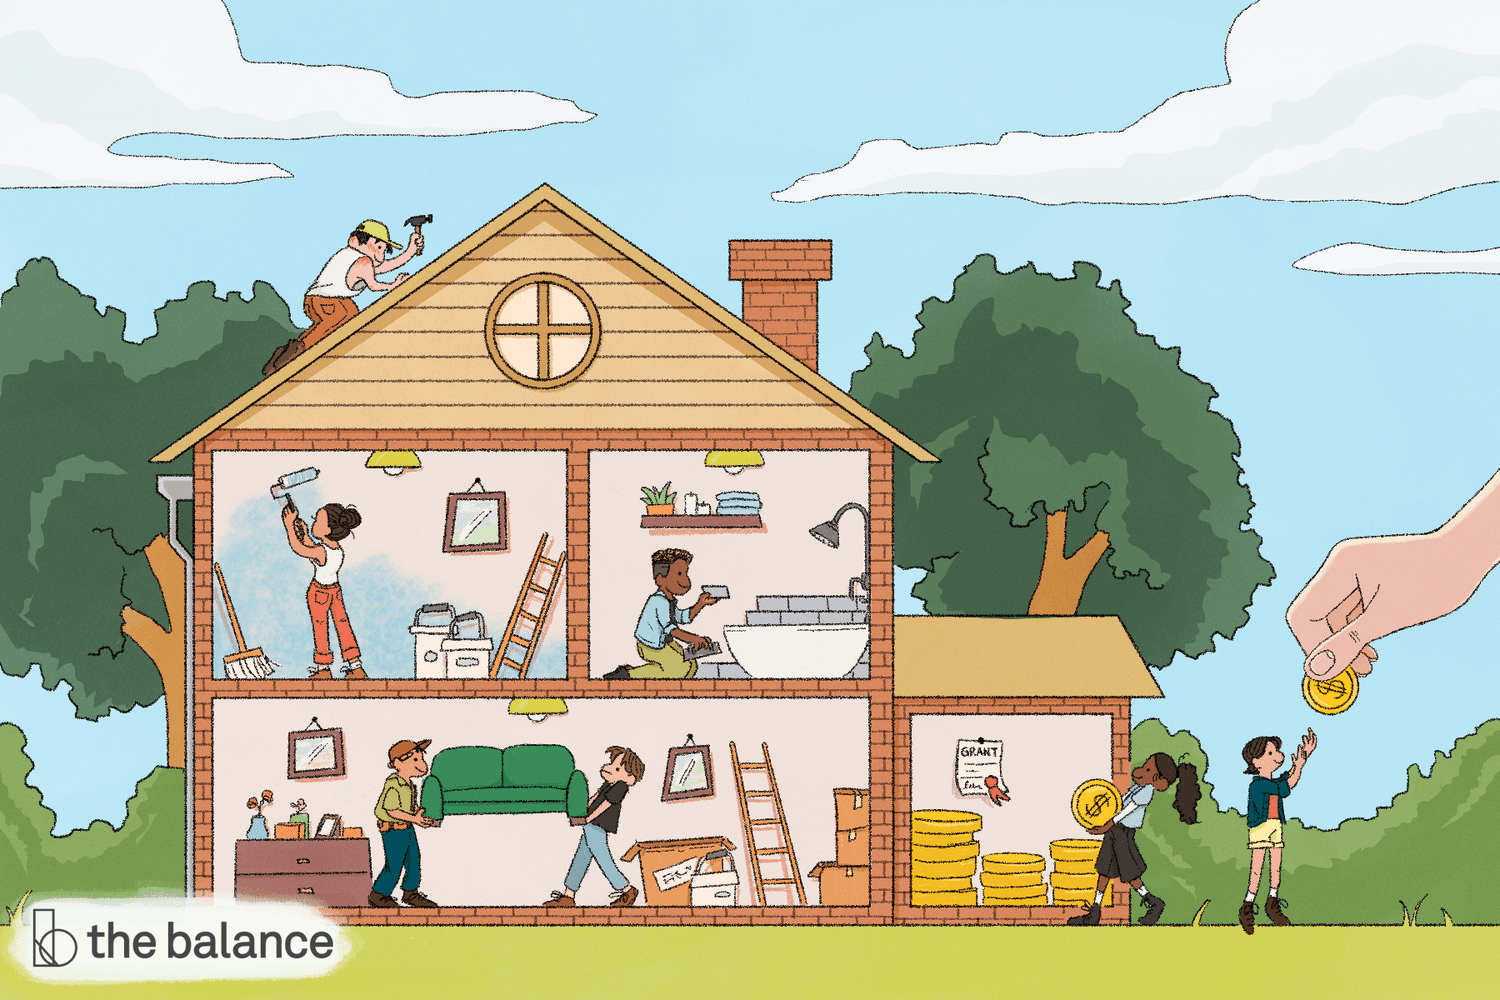 自定义插图显示了一个没有正面的卡通房子，这样你就可以看到每个房间的内部。每个房间都有人在做改动，屋顶上还有人拿着锤子。